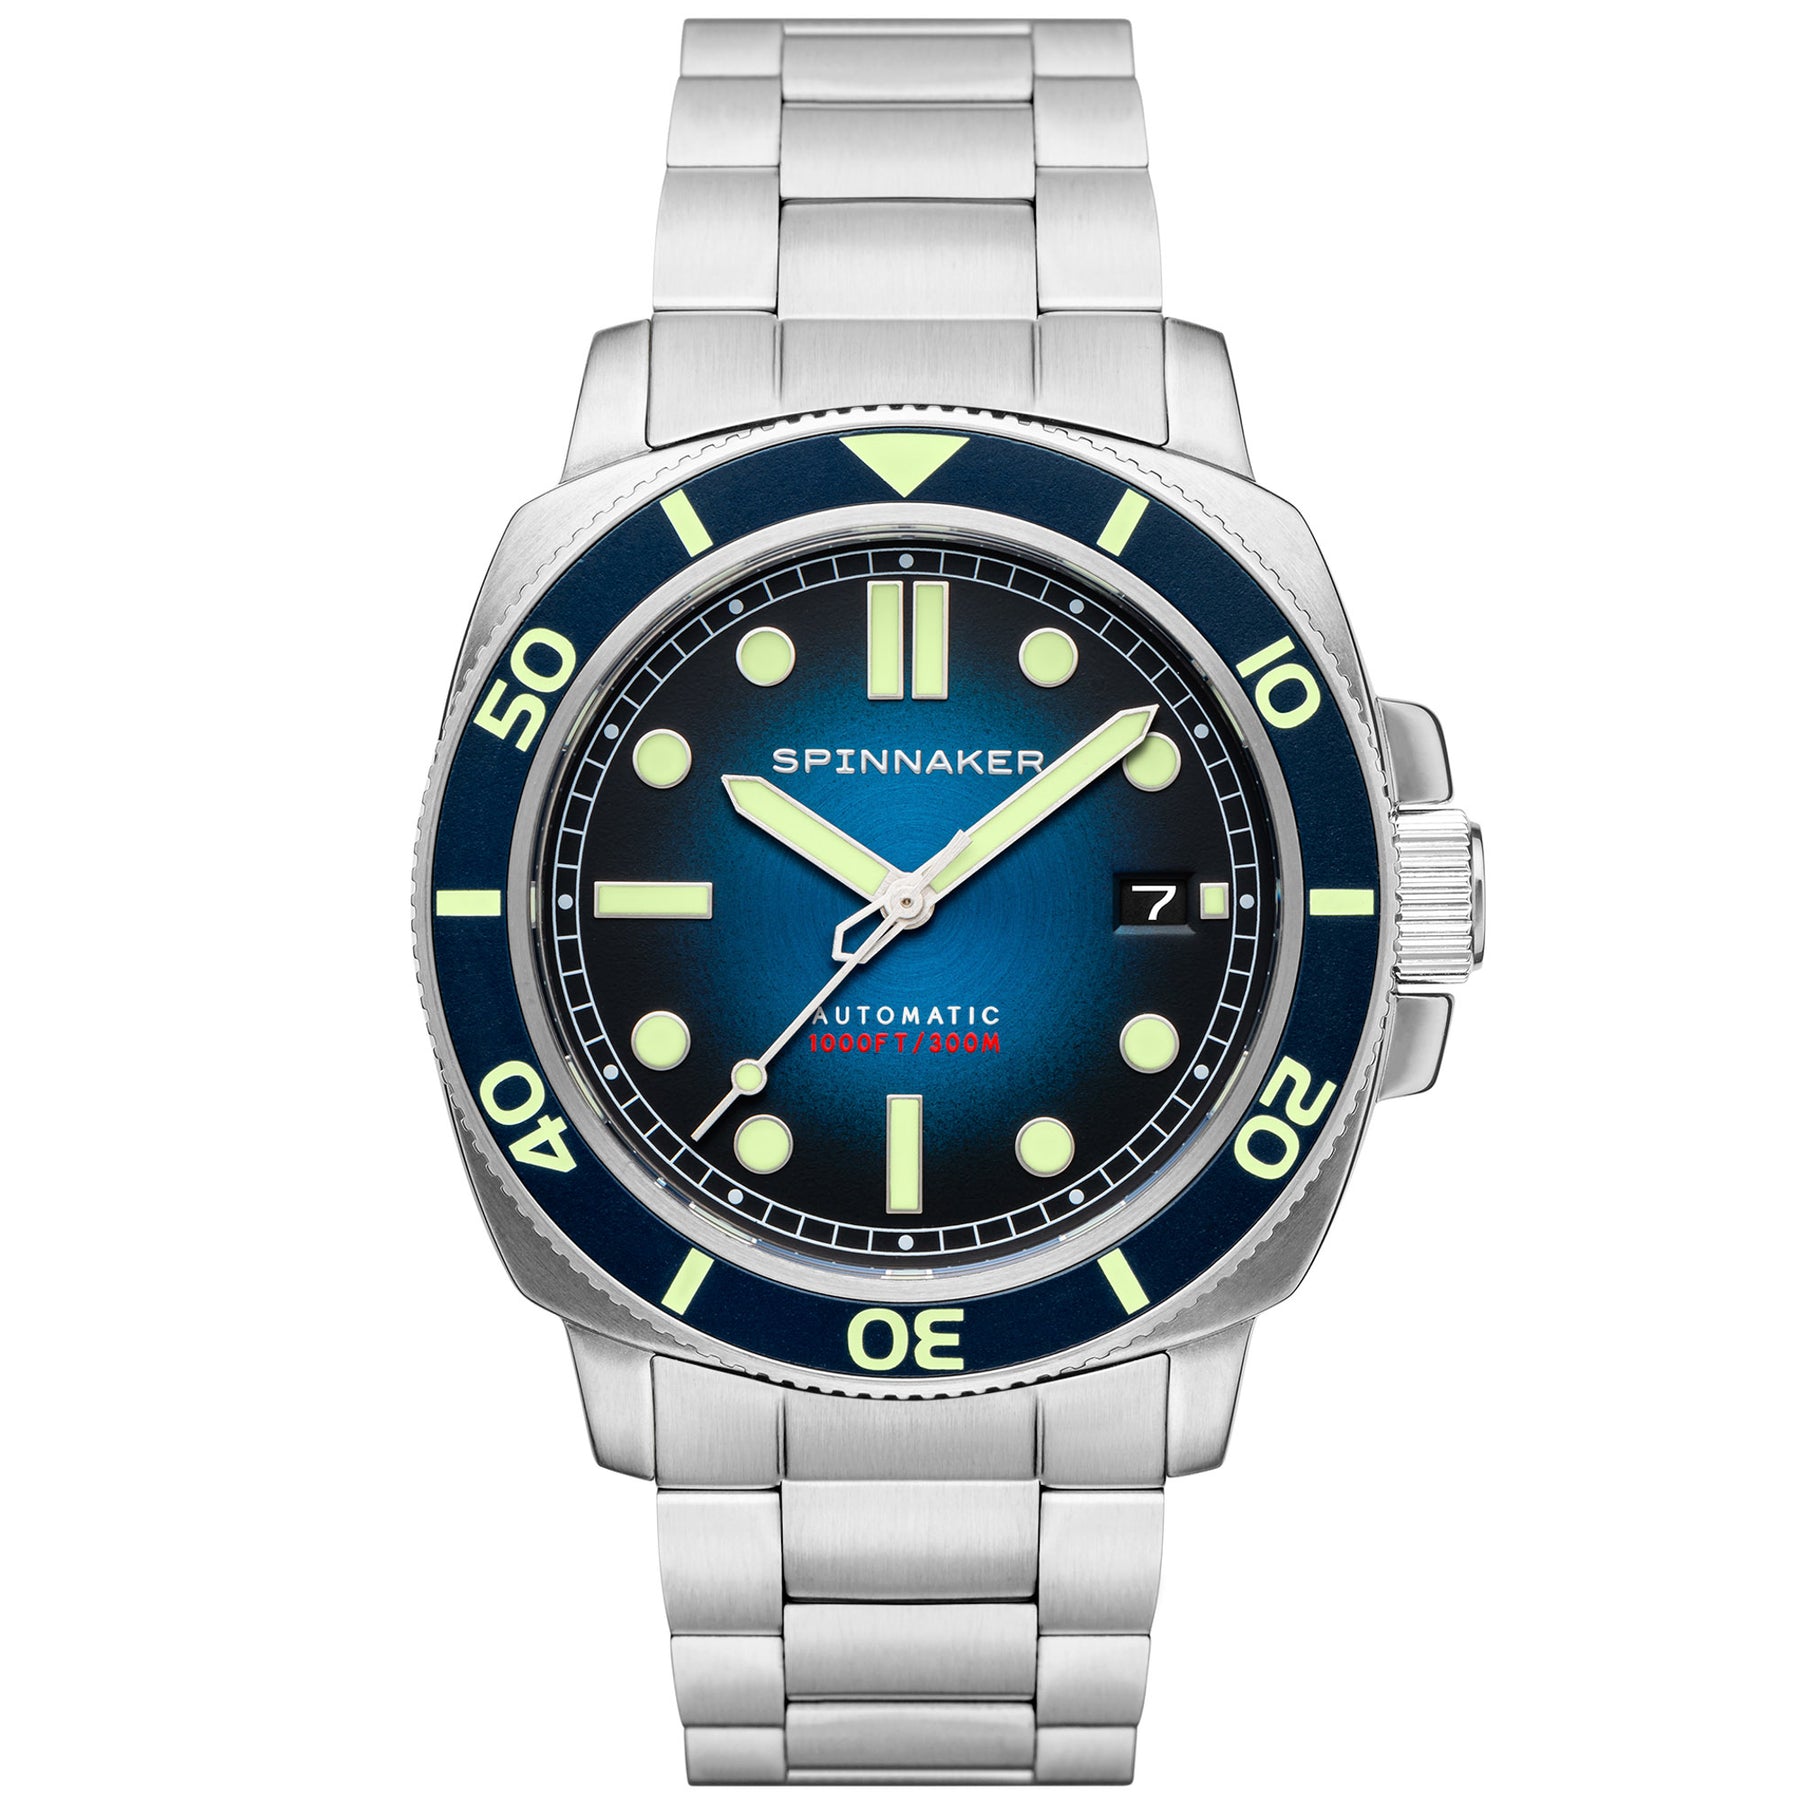 41mm Large Diver's Automatic (GSAR) – Marathon Watch